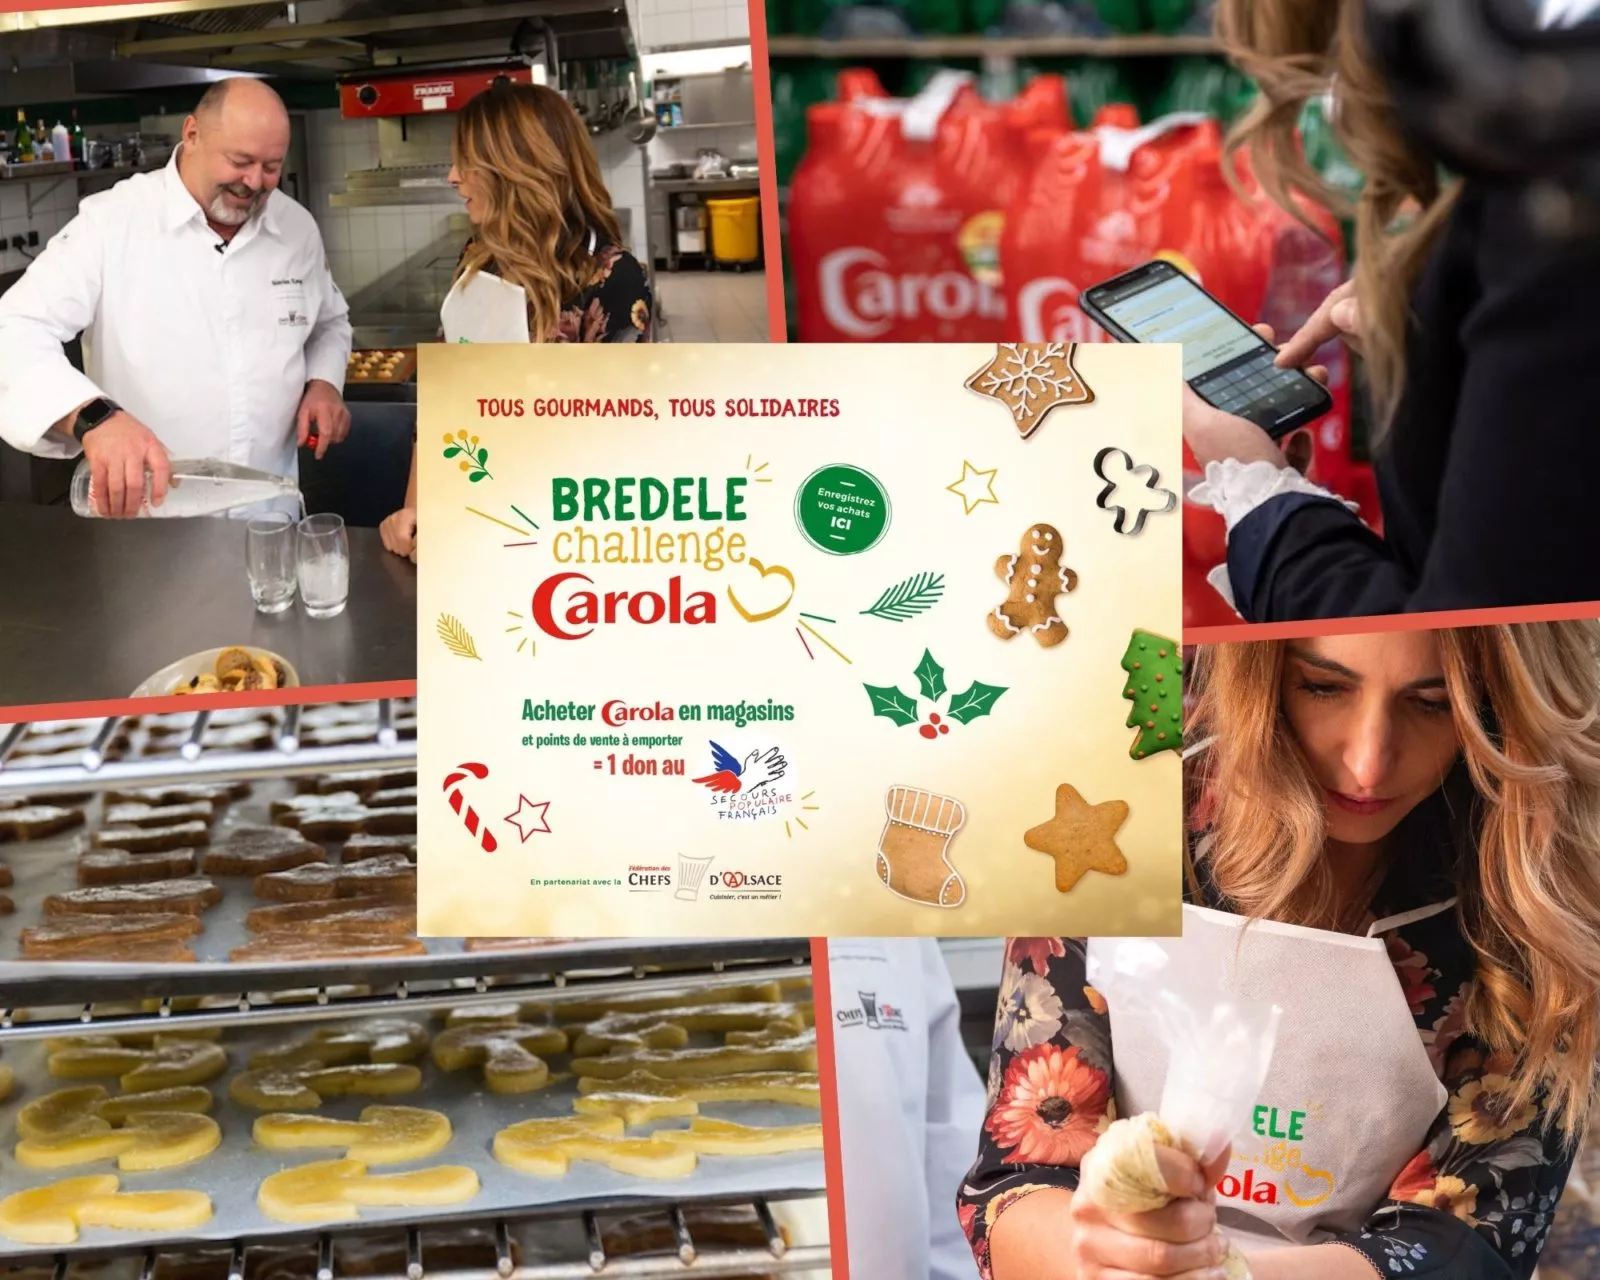 Bredele challenge Carola 2020 : tous ensemble gourmands et solidaires